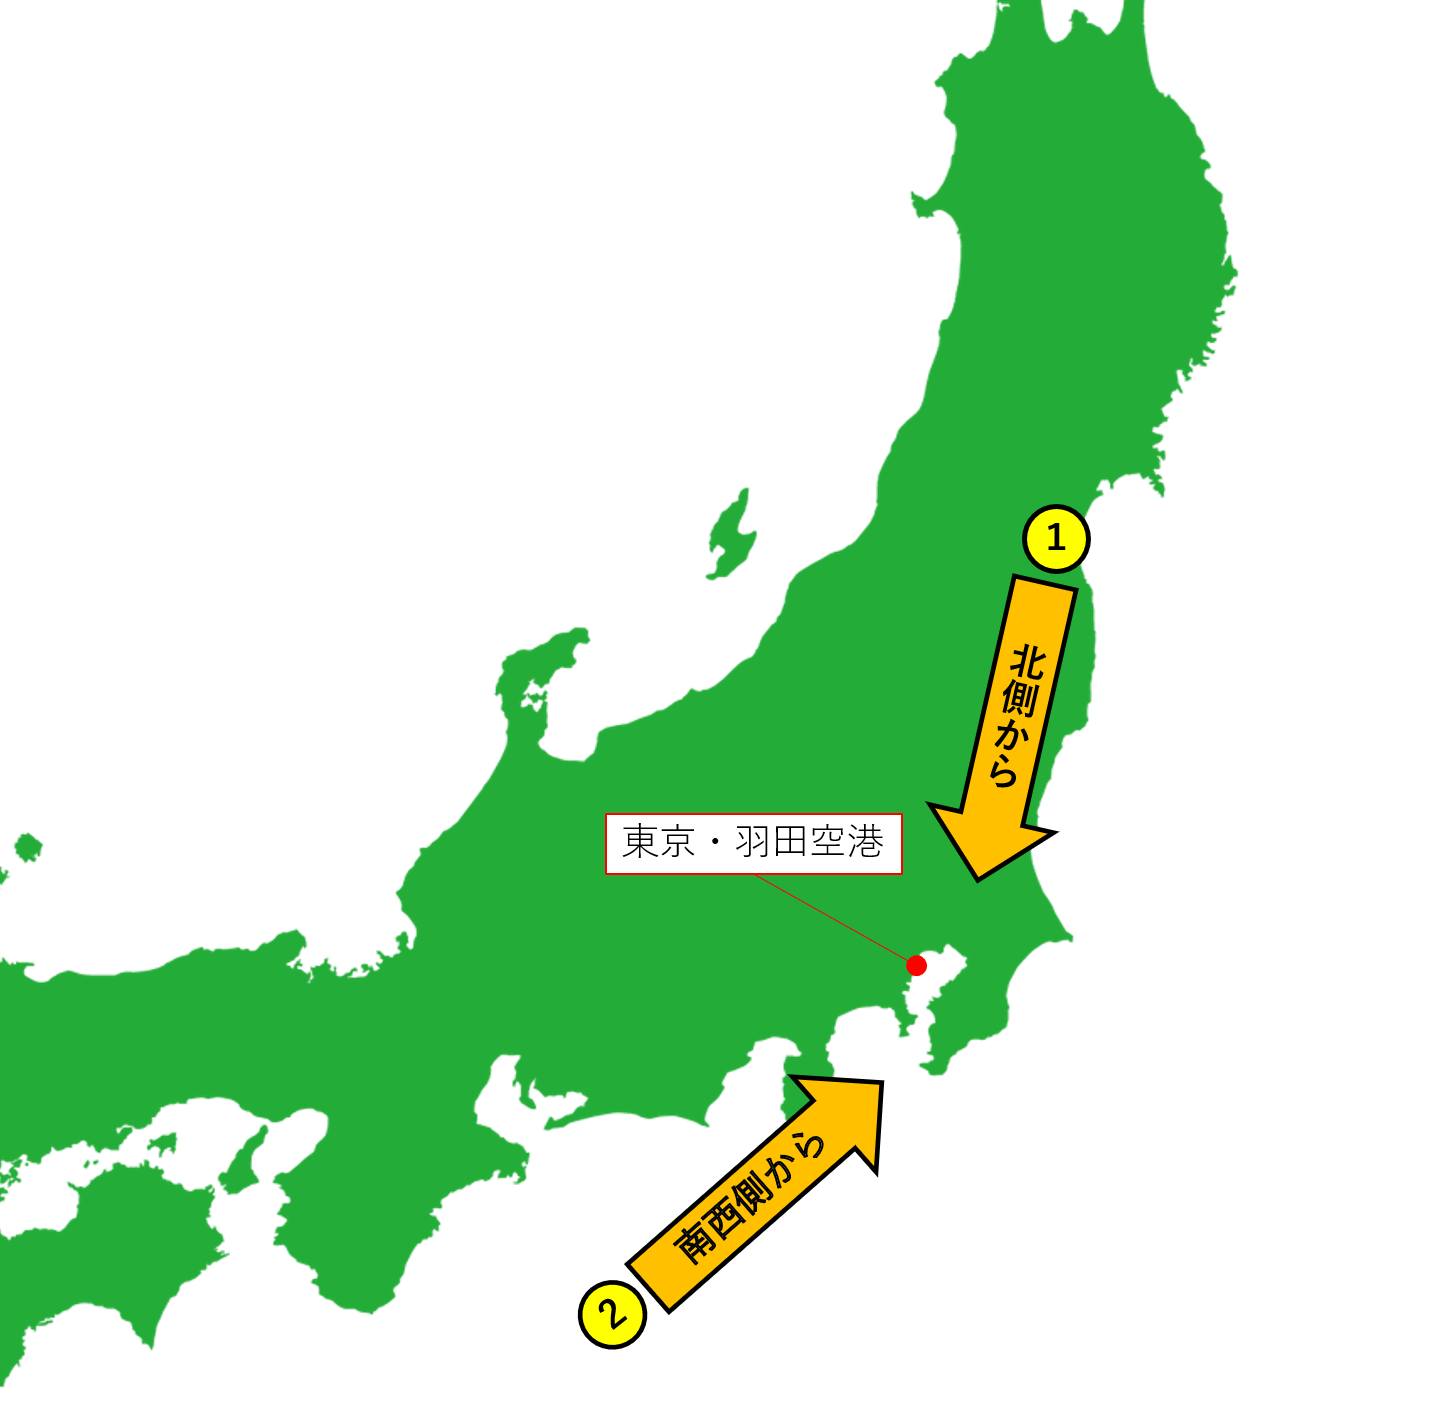 羽田空港へ北側からと南西側から到着するイメージ